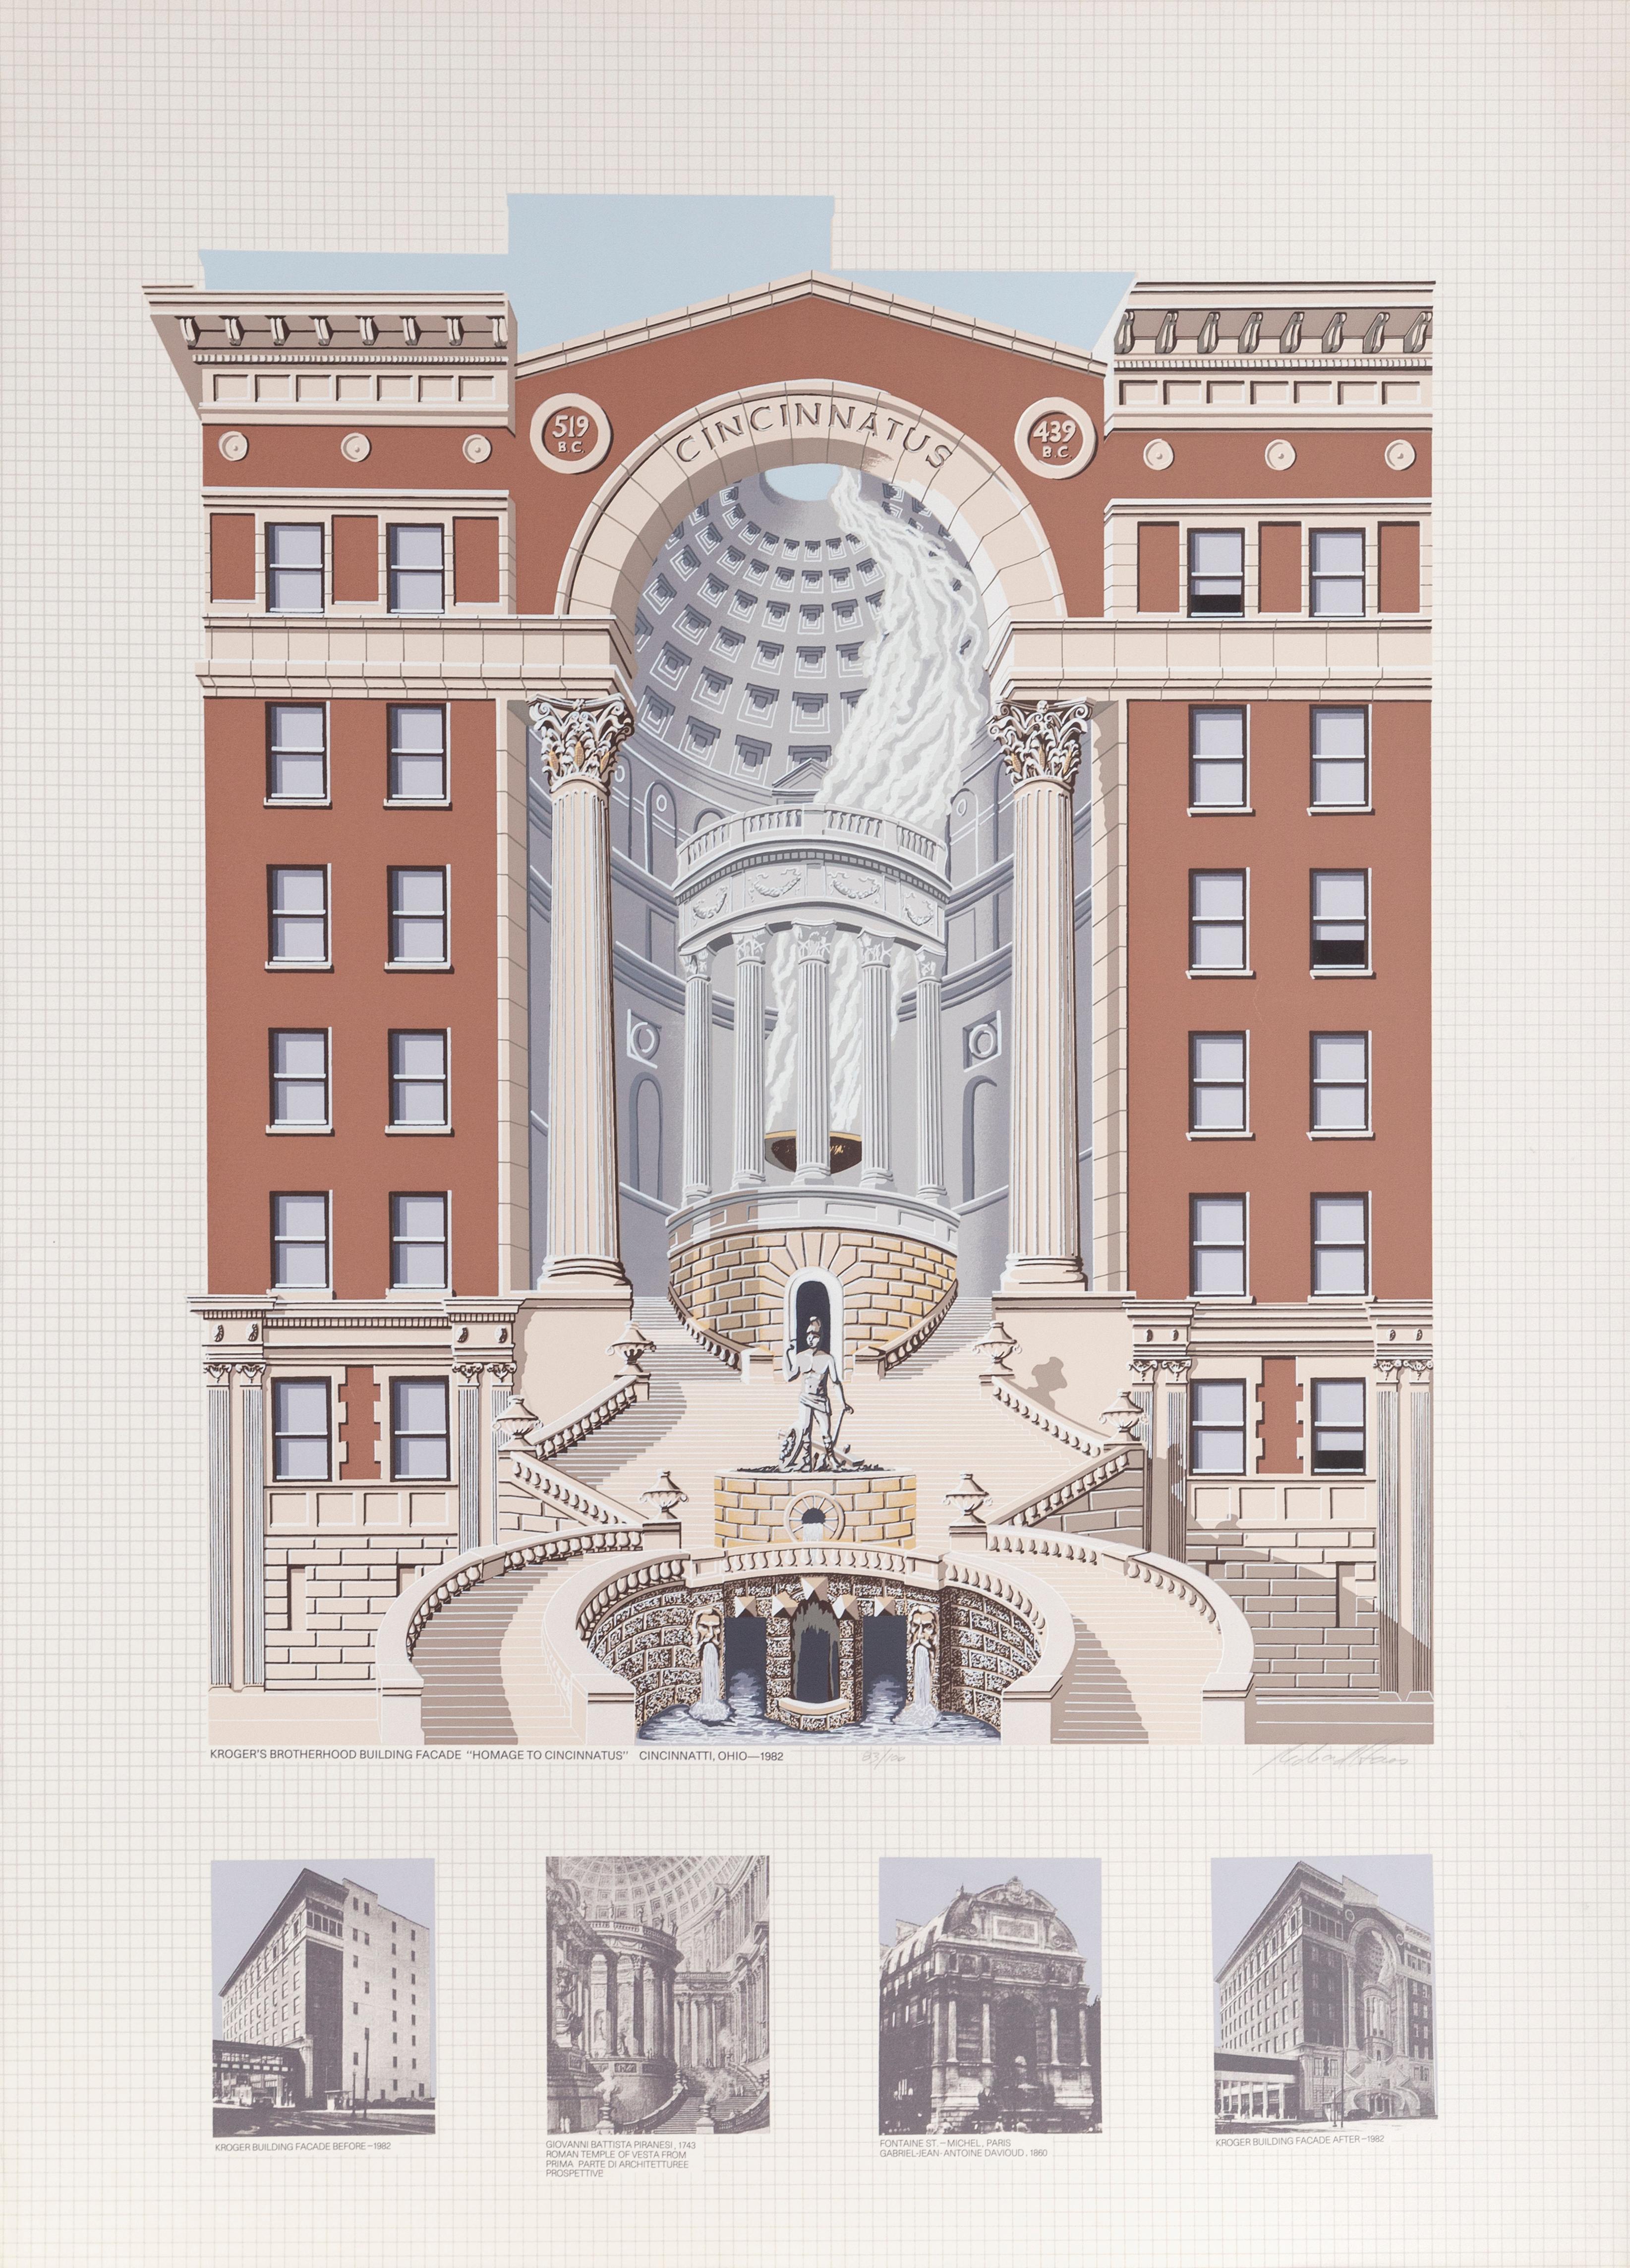 Krogers Brotherhood Building, Cincinnati - Screenprint by Richard Haas